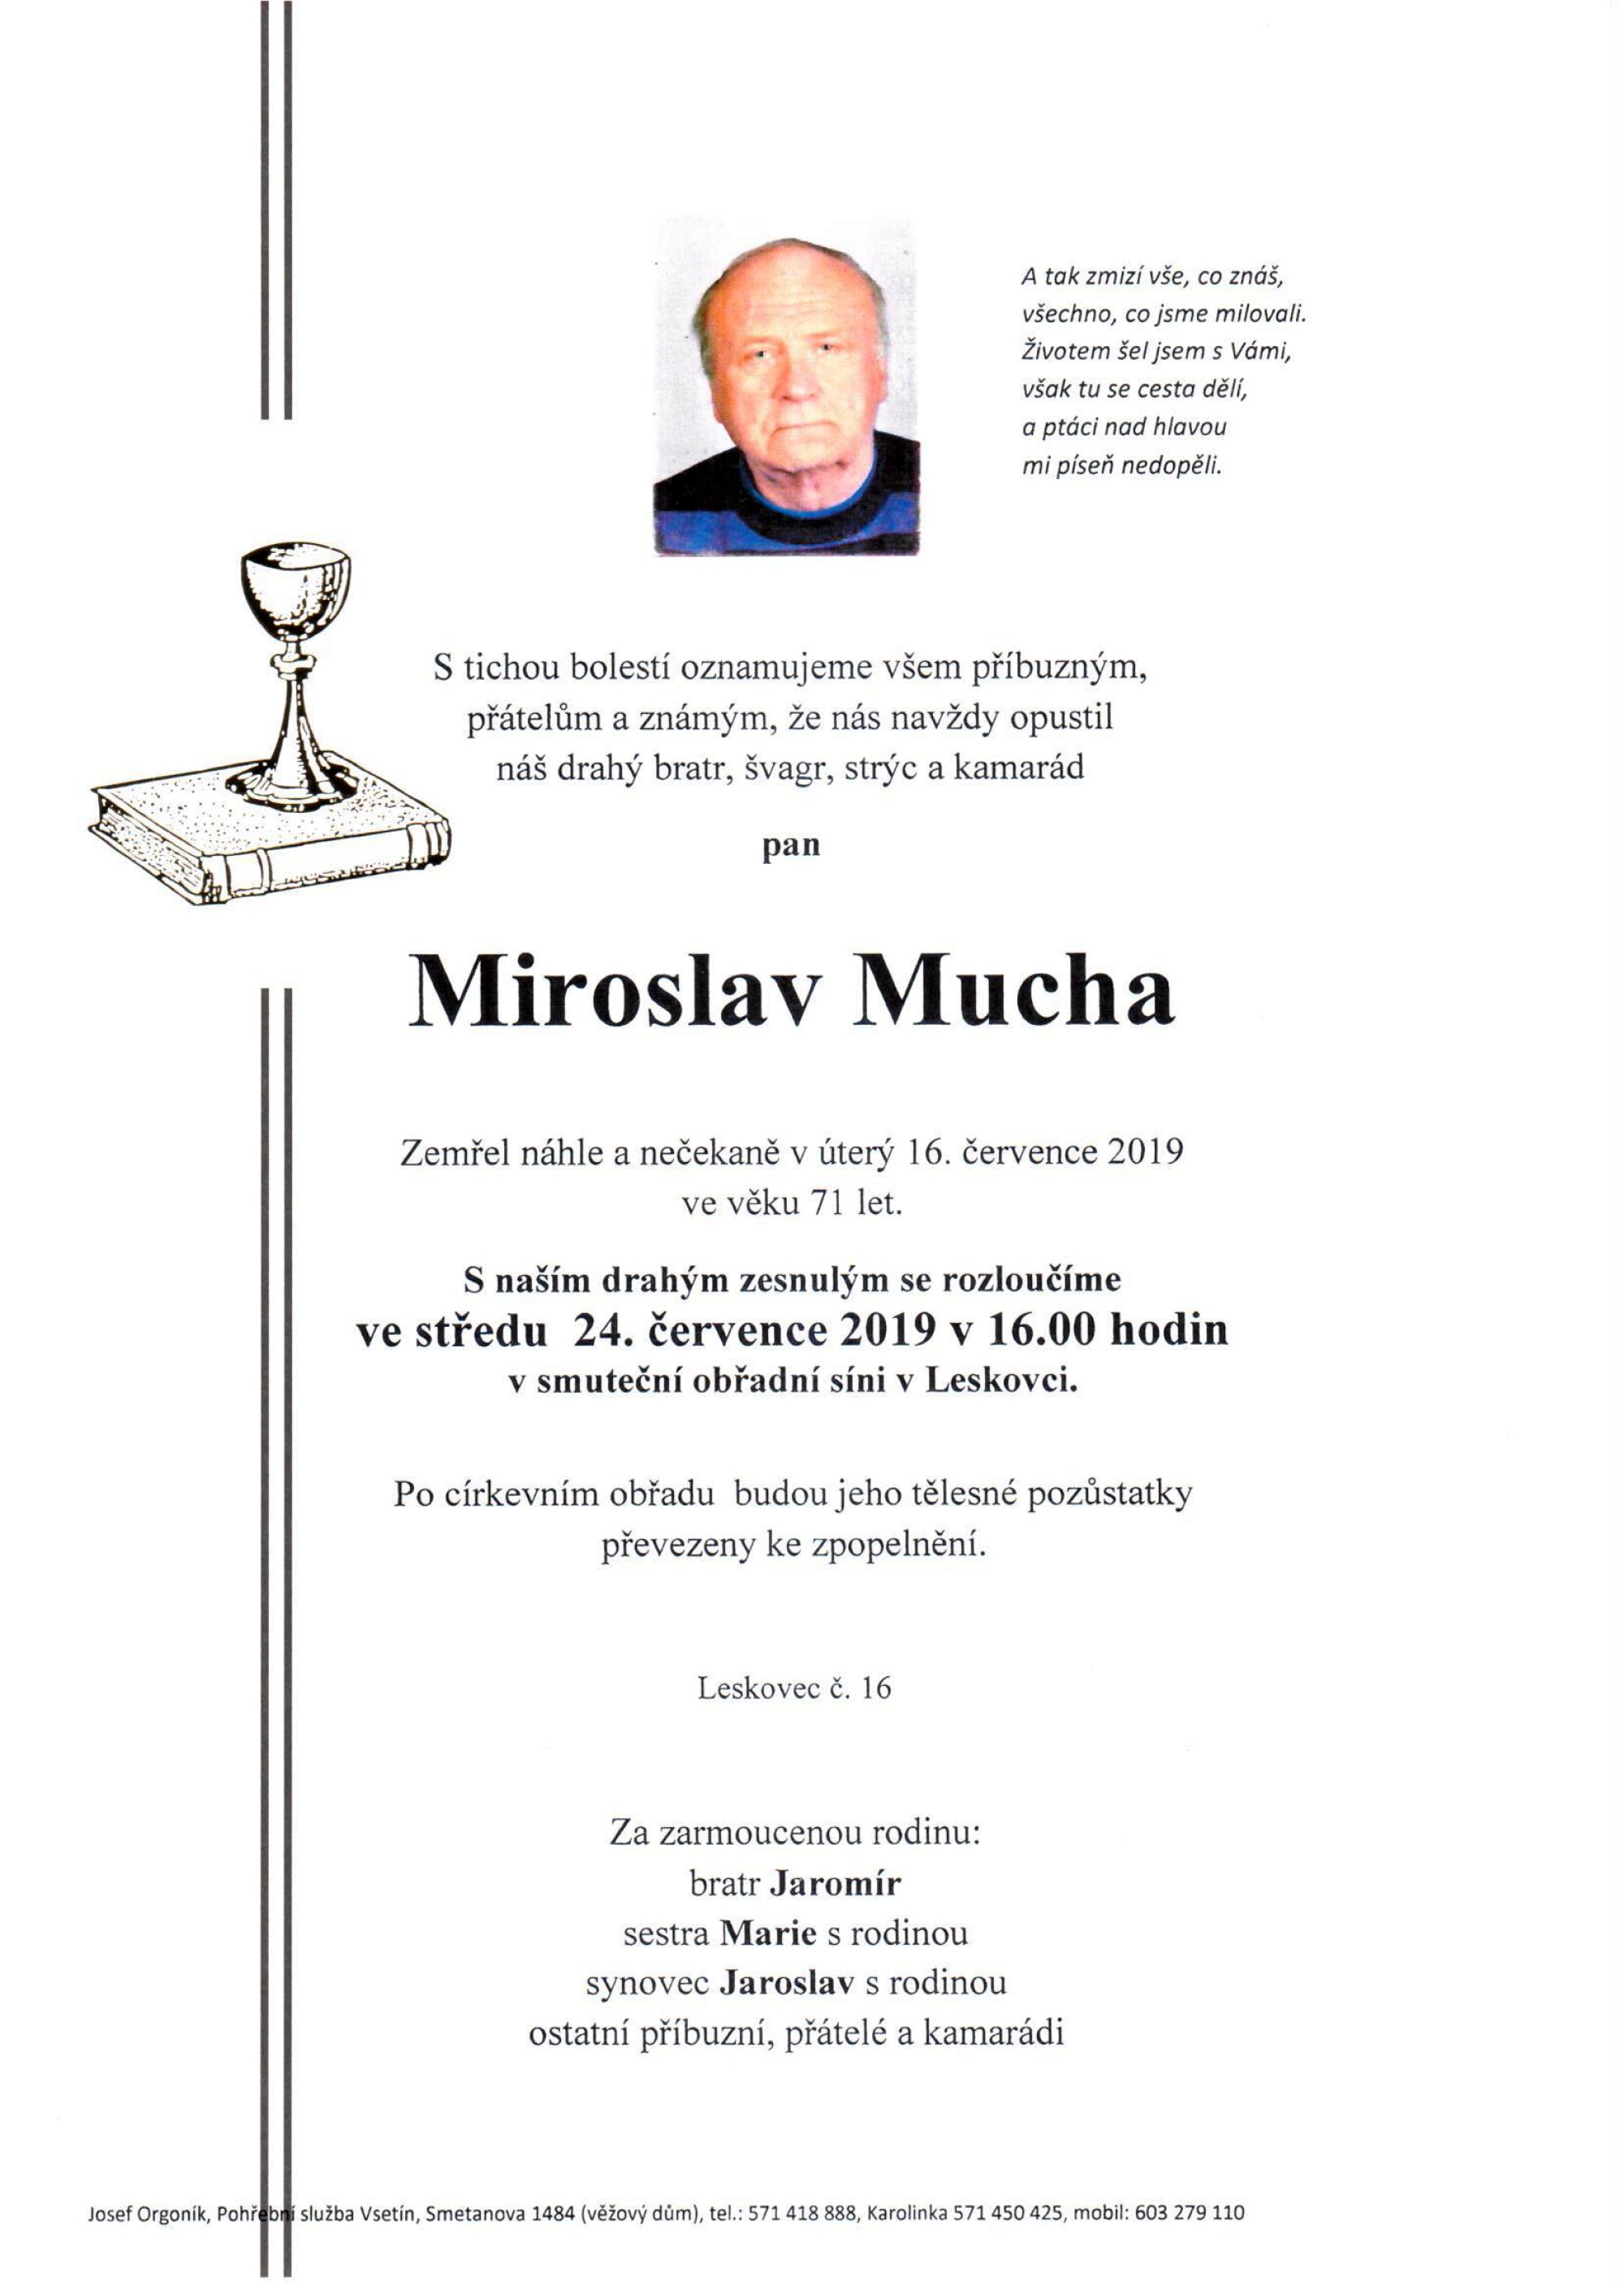 Miroslav Mucha